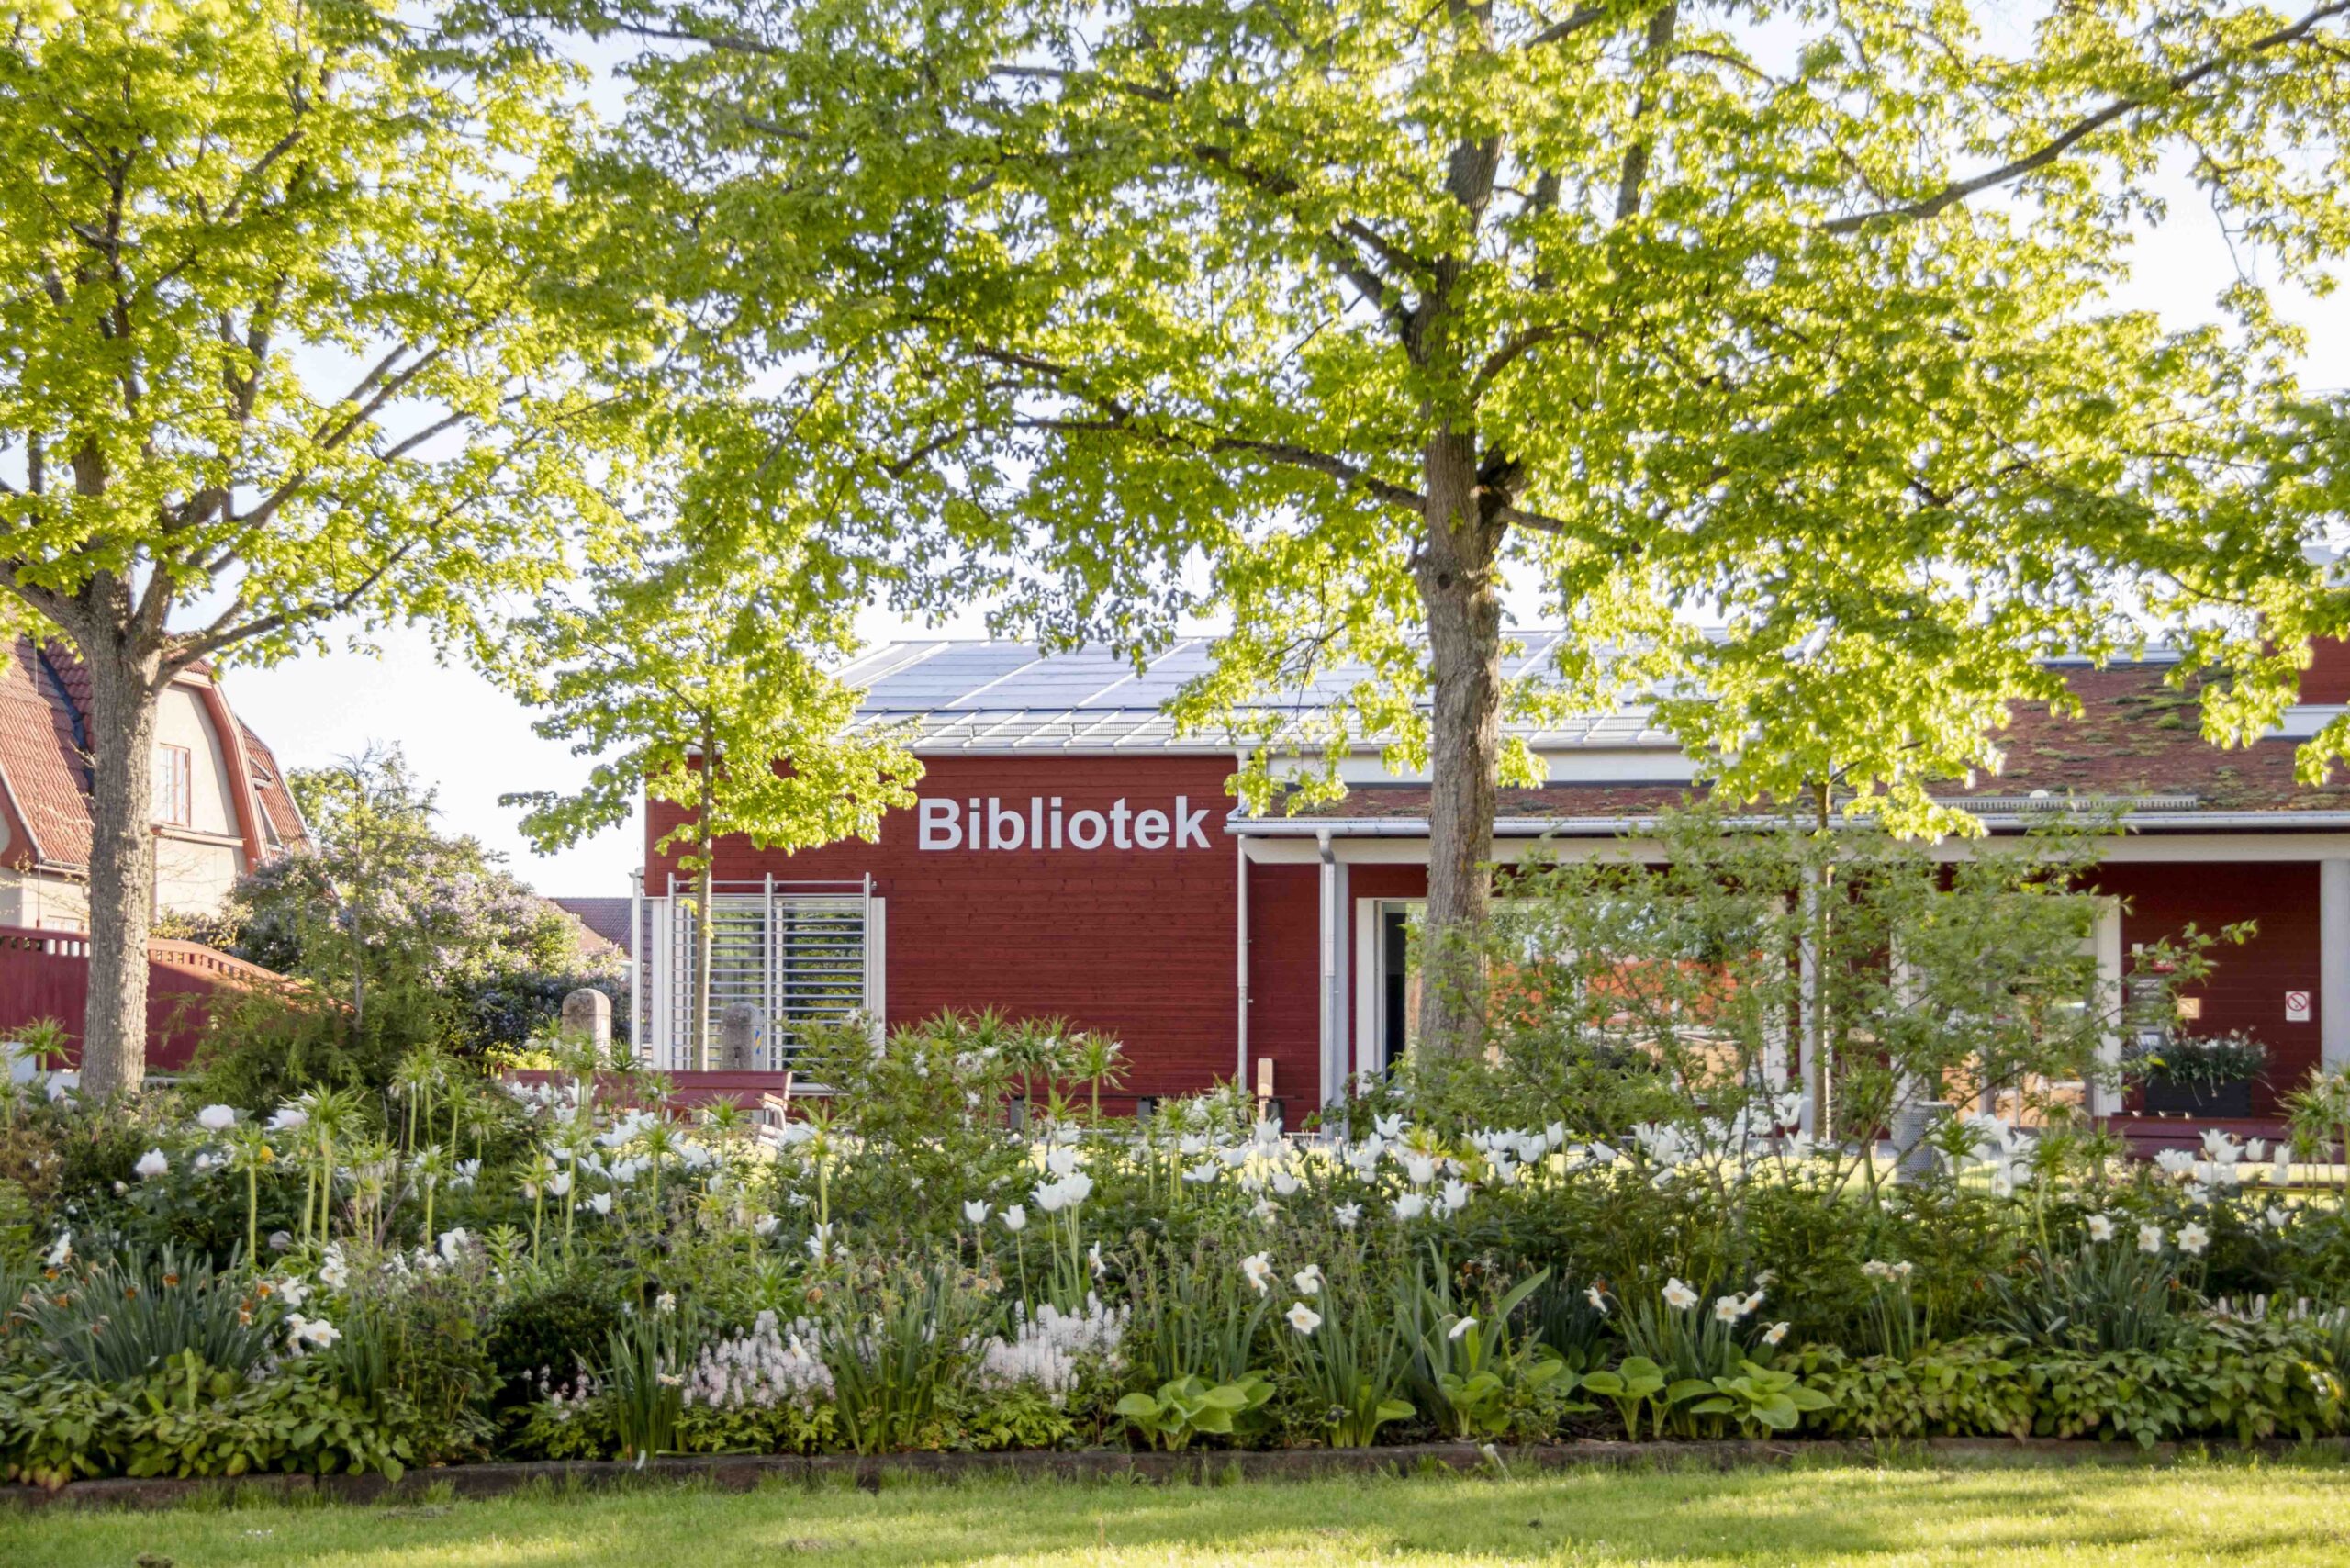 Grönskade blomsterrabatter och träd. Bakom träden syns en röd byggnad med texten Bibliotek på fasaden.